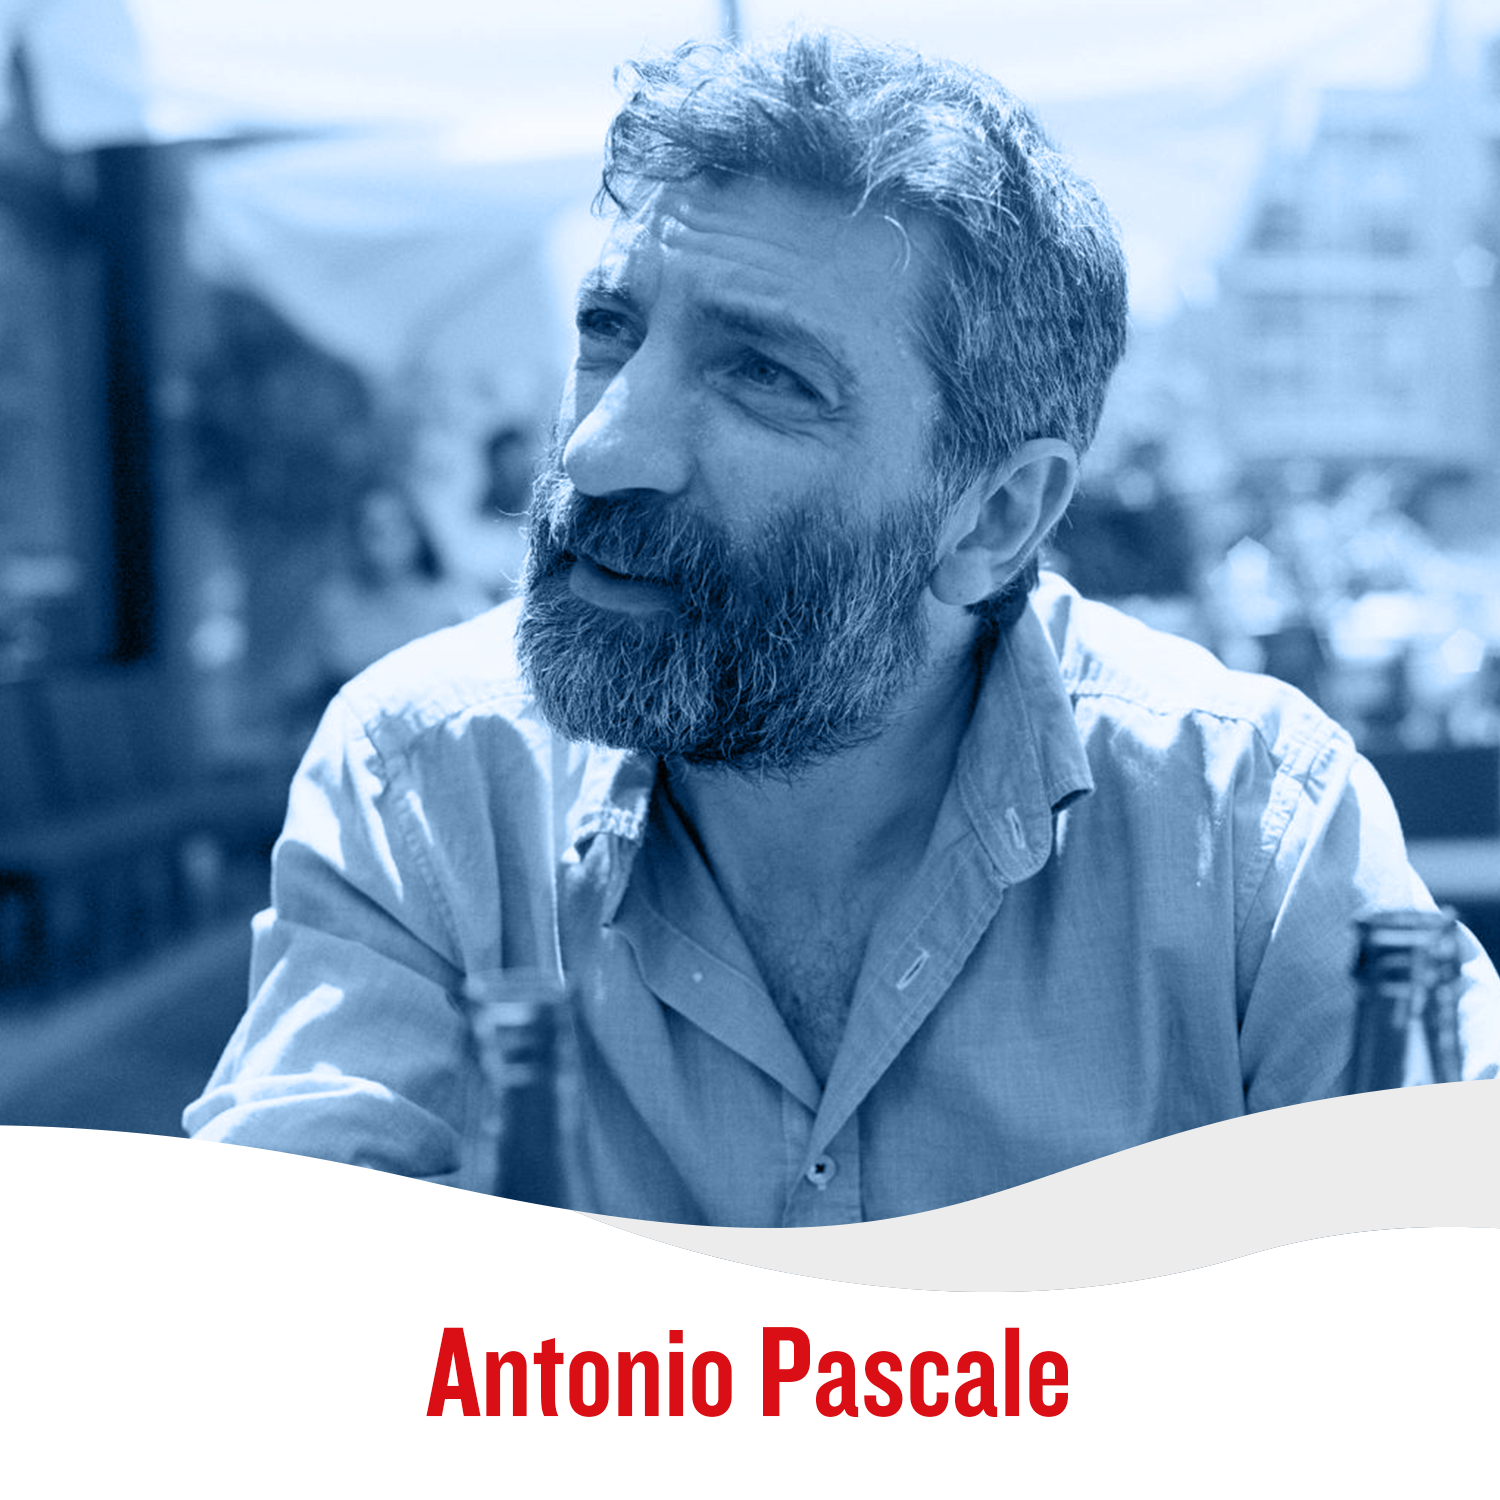 Antonio Pascale